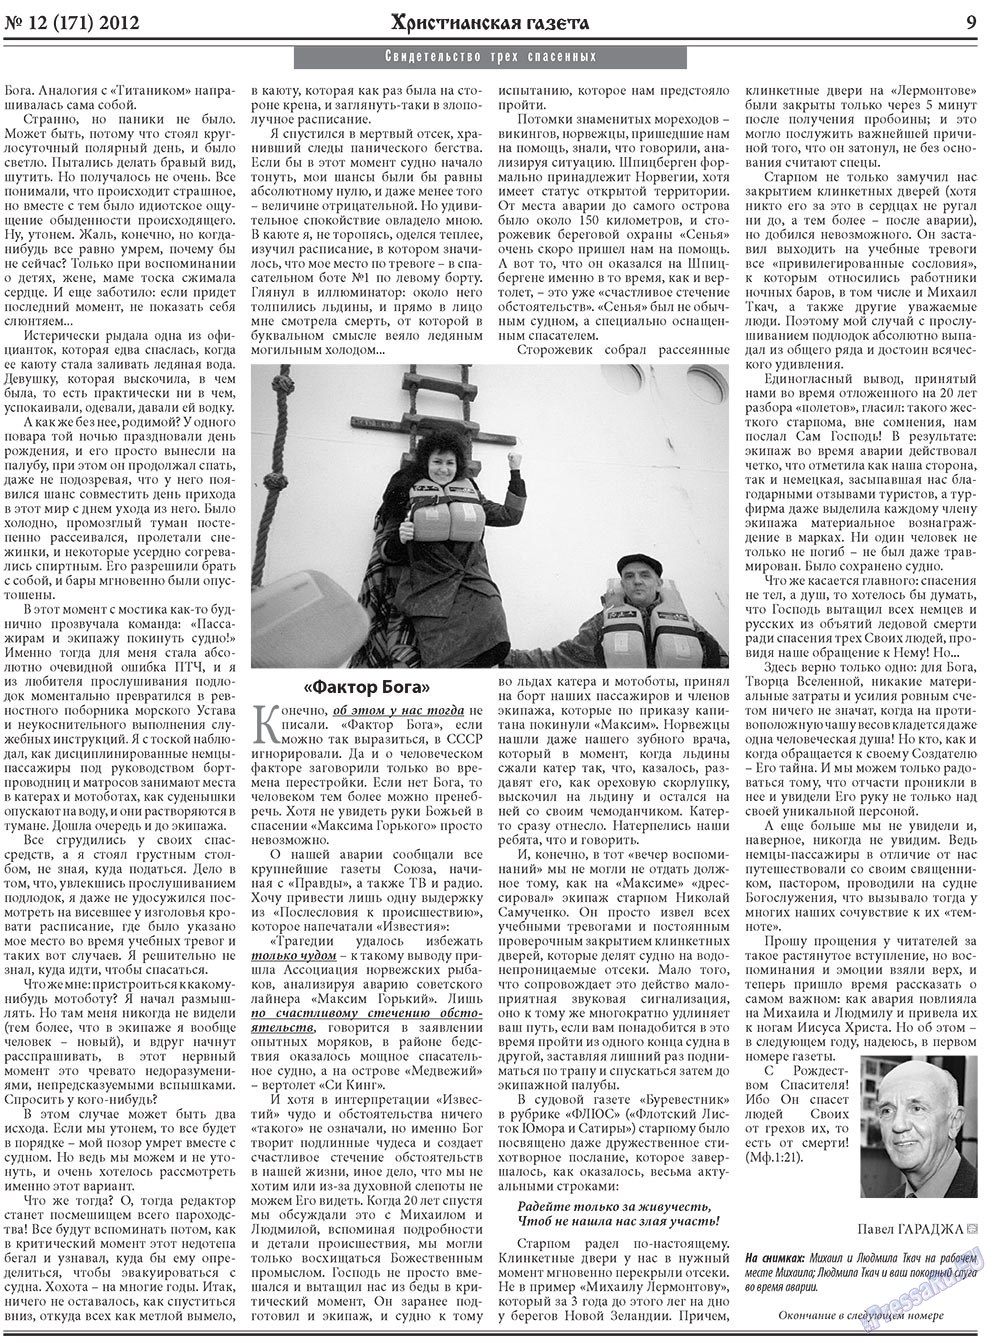 Христианская газета, газета. 2012 №12 стр.9